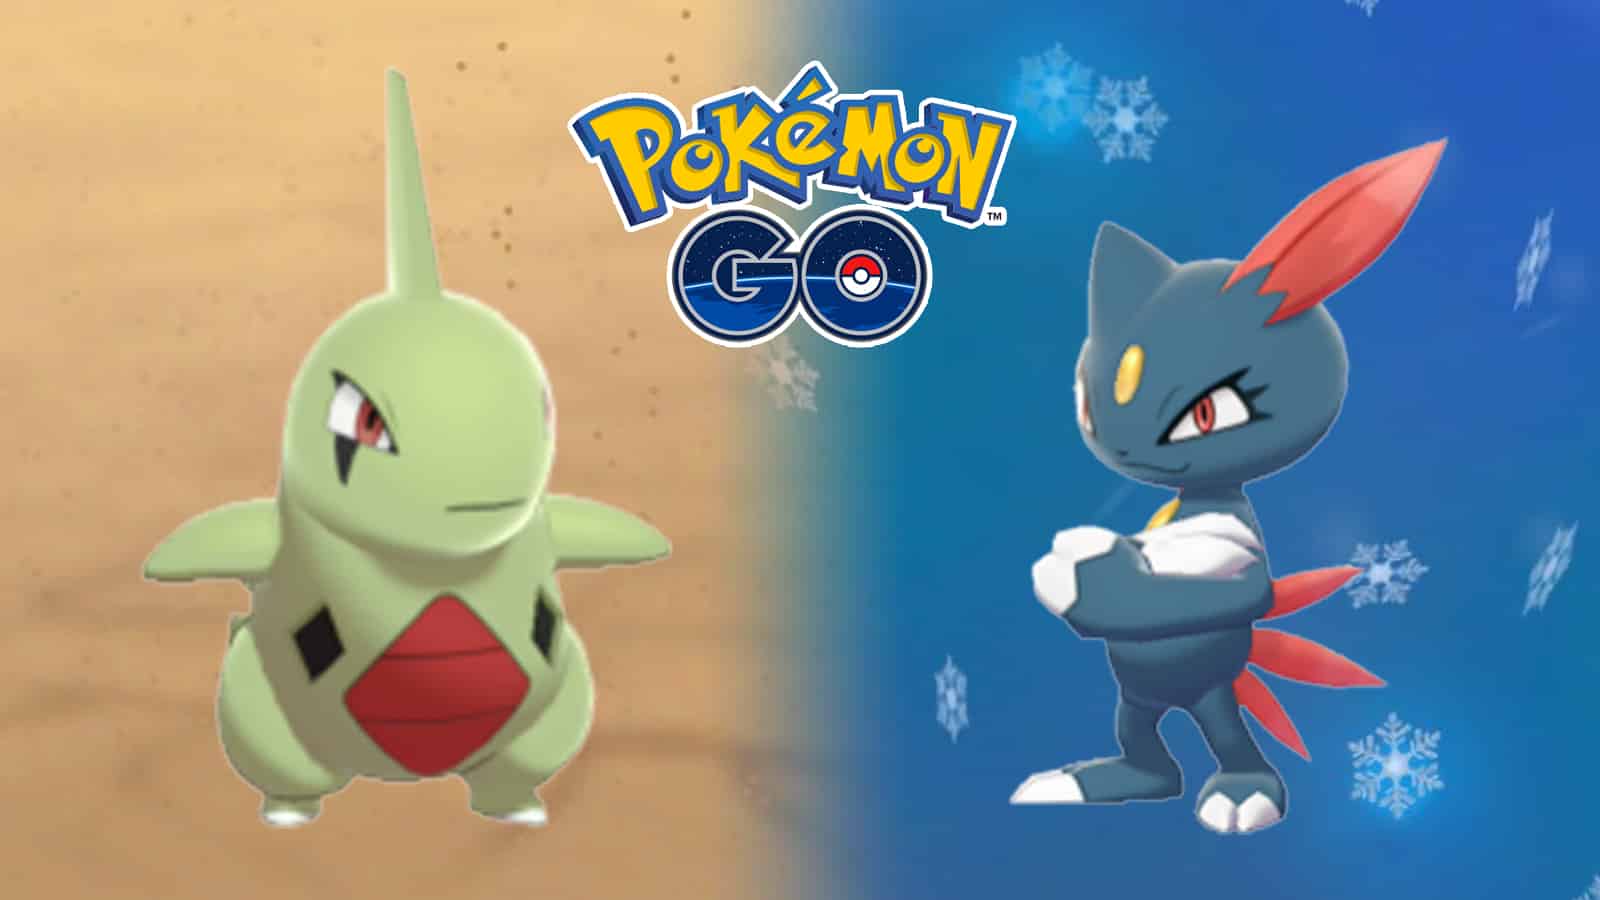 Pokémon Go: Pesquisa do Snubbull e Dia de Incenso - Pokémothim